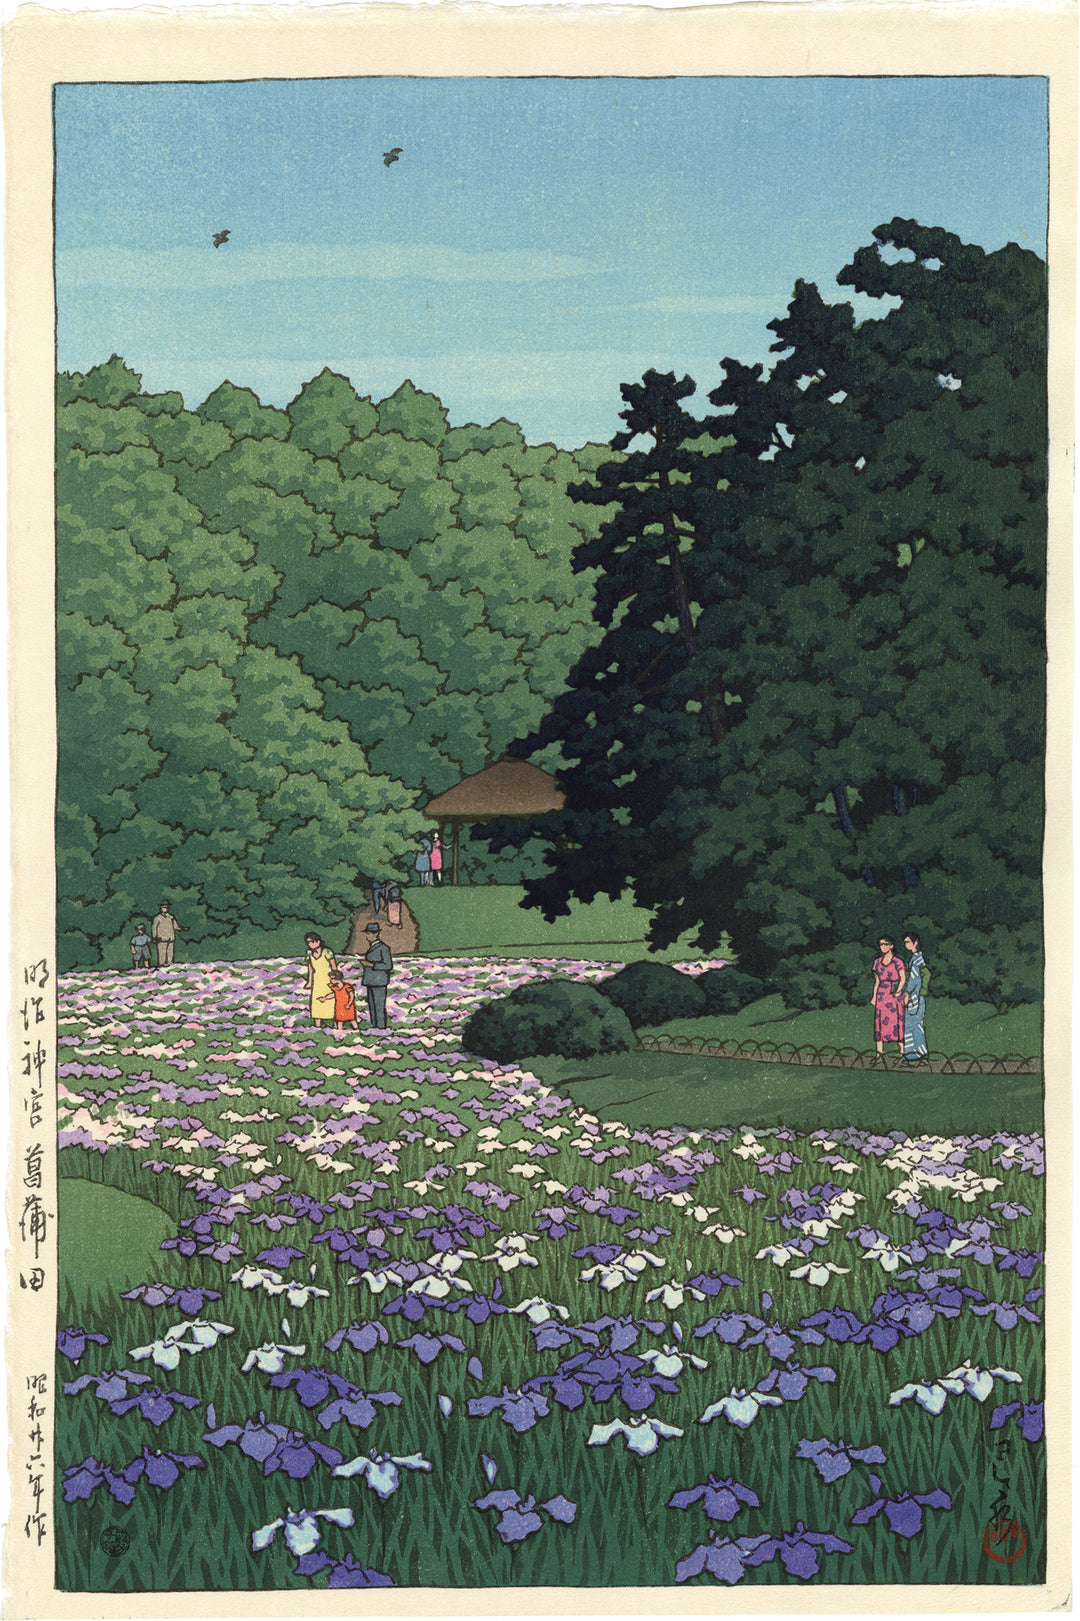 东京明治神宫的鸢尾花园 by 川濑巴水  - 1951 - 38.8 x 25.8 cm 